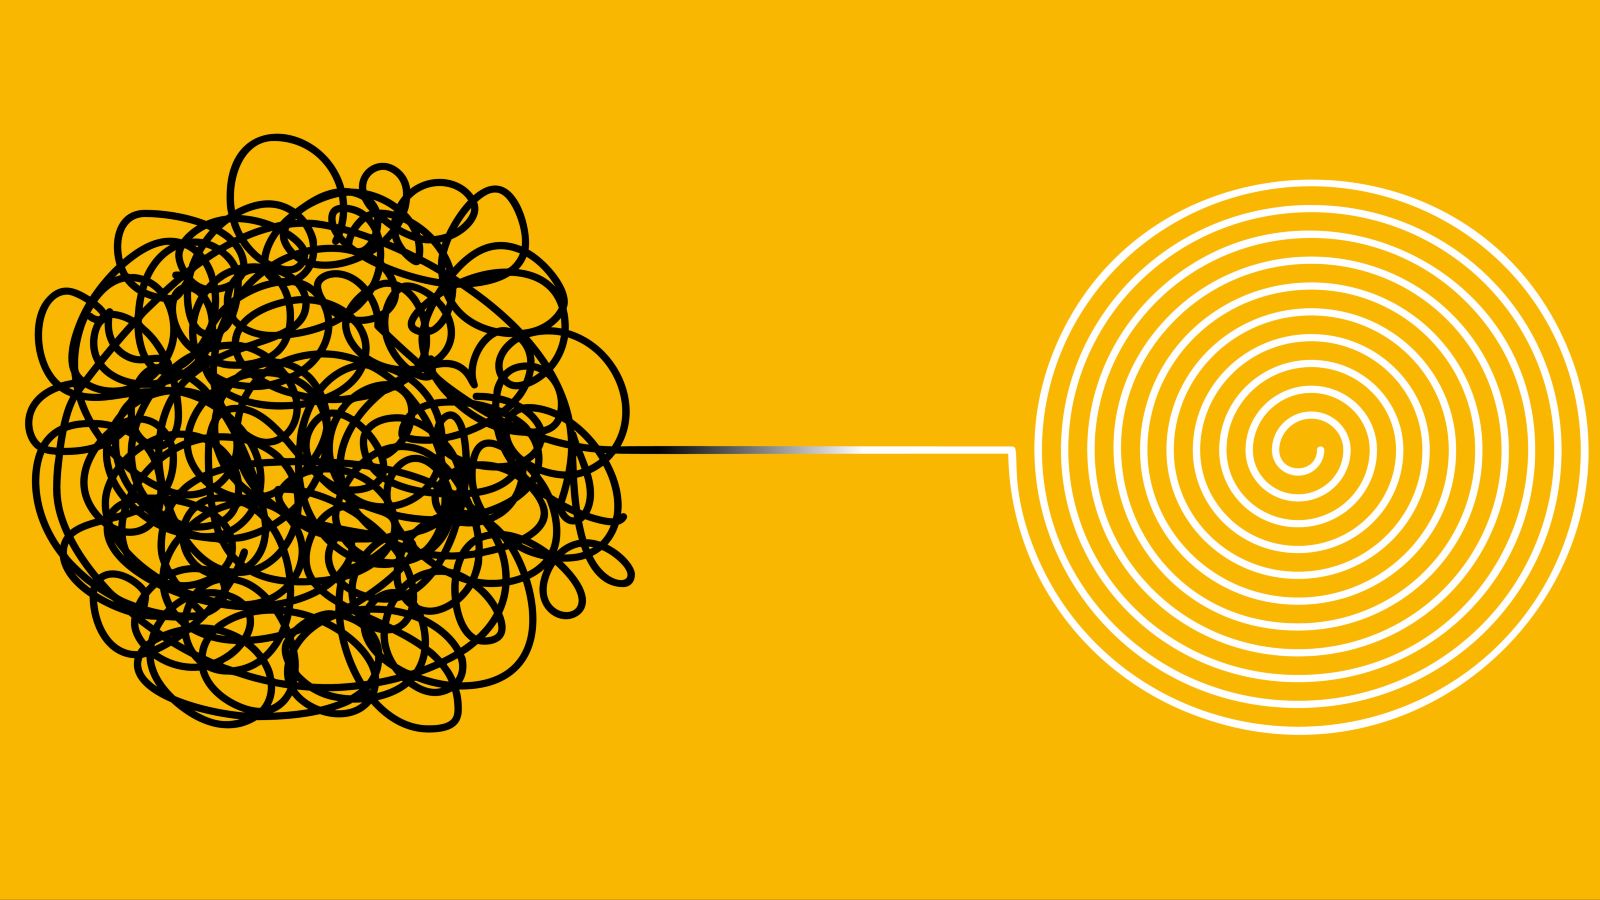 Vor gelbem Grund wird ein unordentliches schwarzes Knäuel auf der linken Seite zu einer ordentlichen Spirale auf der rechten Seite entwirrt. 